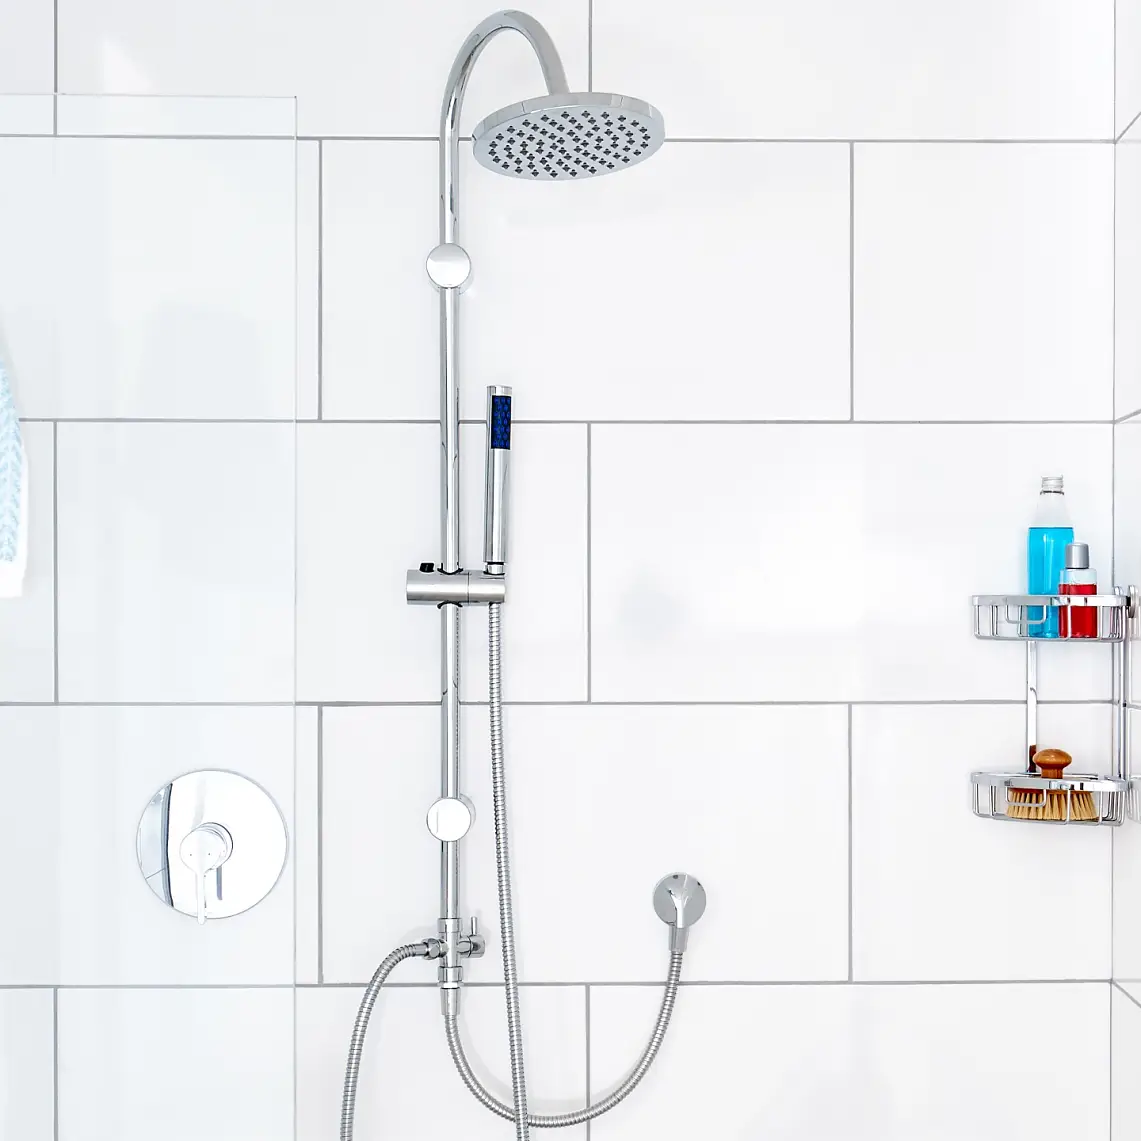 Das Herzstück Ihrer Dusche. Unsere minimalistischen Duschstangen-Designs optimieren Ihre Dusche und Ihr Dusch-Gefühl.